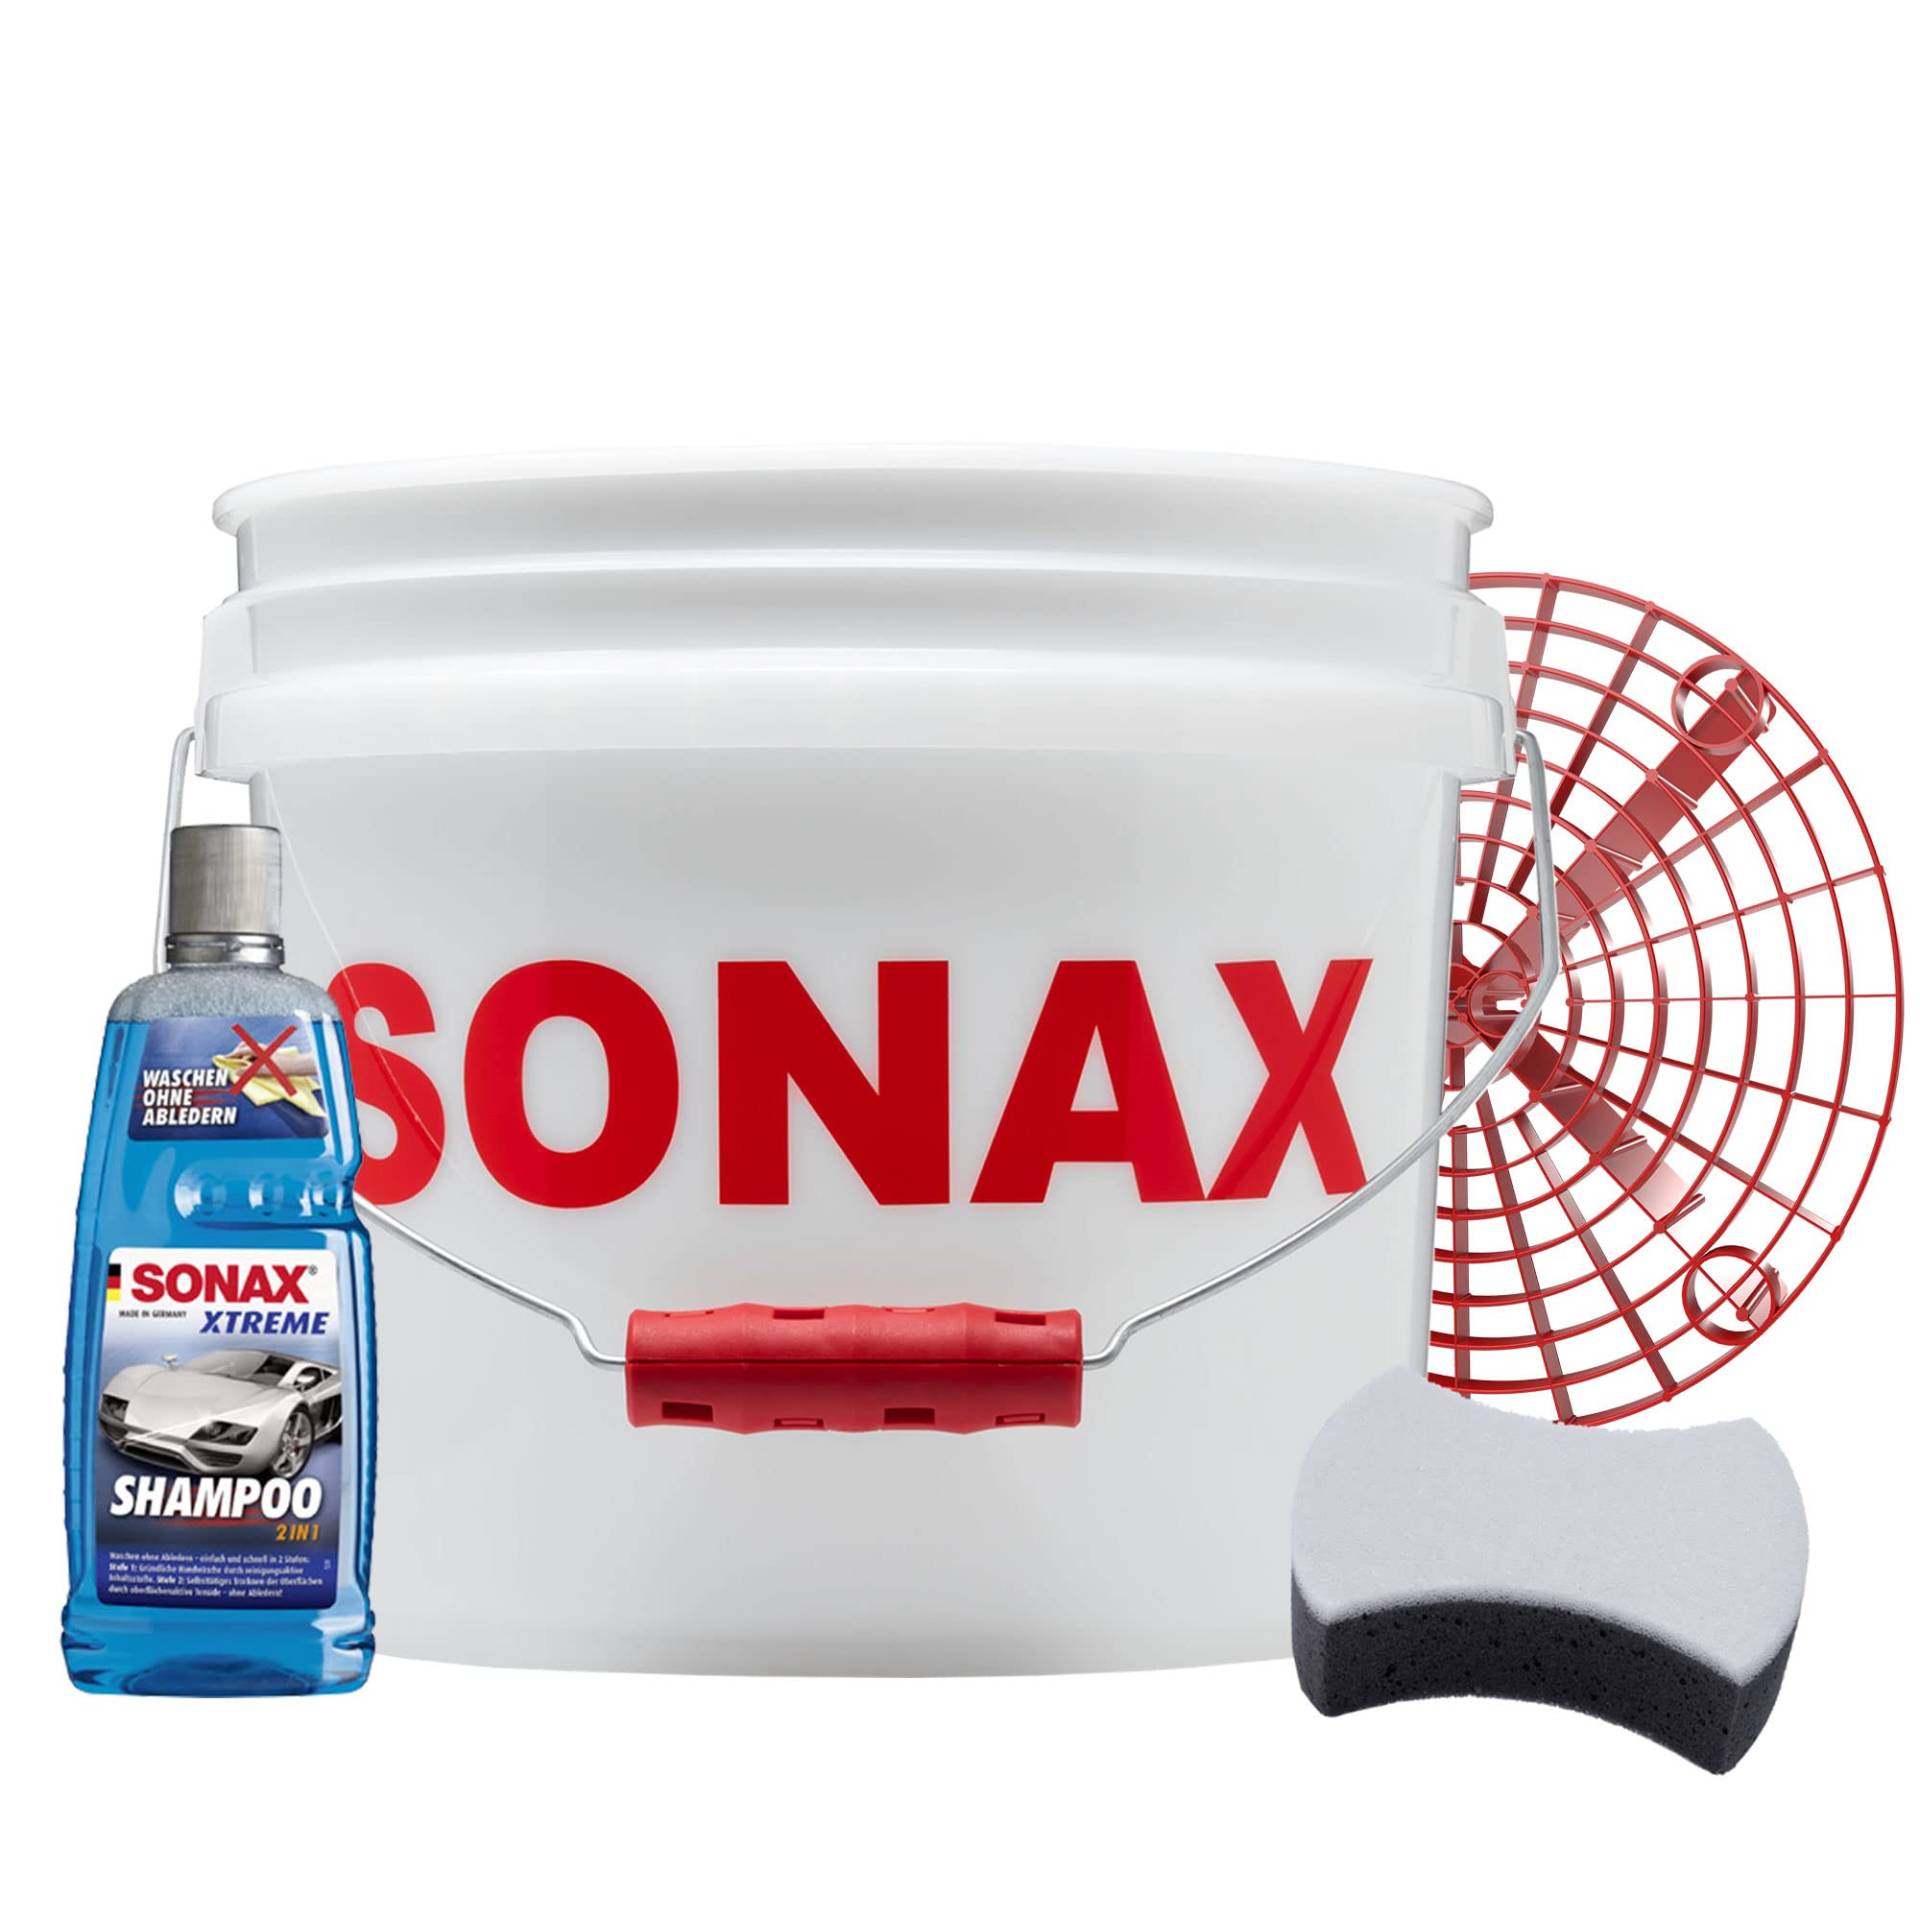 Detailmate - SONAX Auto Handwäsche Set: Sonax GritGuard Wascheimer, 13 Liter rot (3,5 Gallonen) + GritGuard Schmutz Einsatz + Sonax Xtreme Auto Shampoo 2in1 + Sonax Multischwamm von detailmate